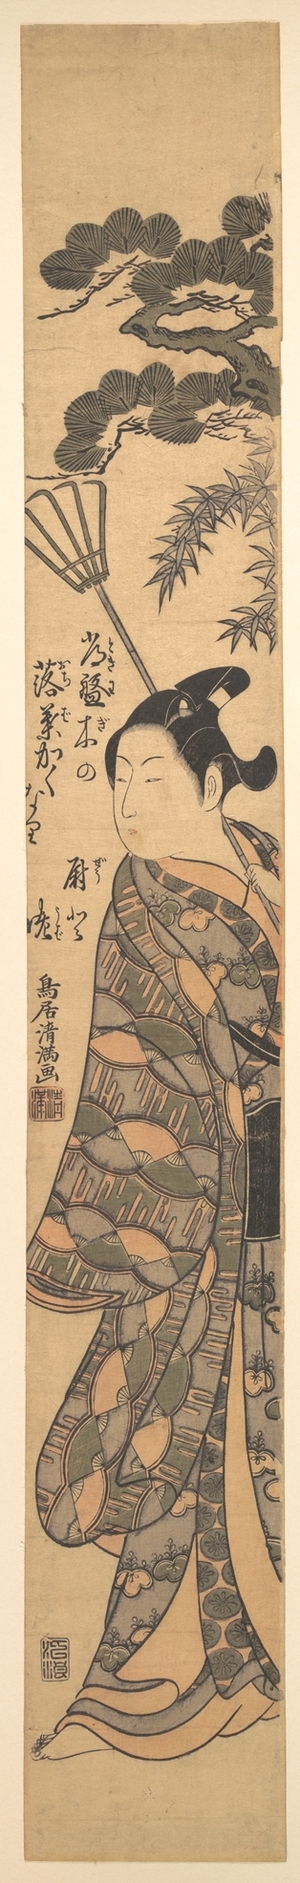 鳥居清満: A Tall Young Man Carrying a Bamboo Rake Over His Left Shoulder - メトロポリタン美術館